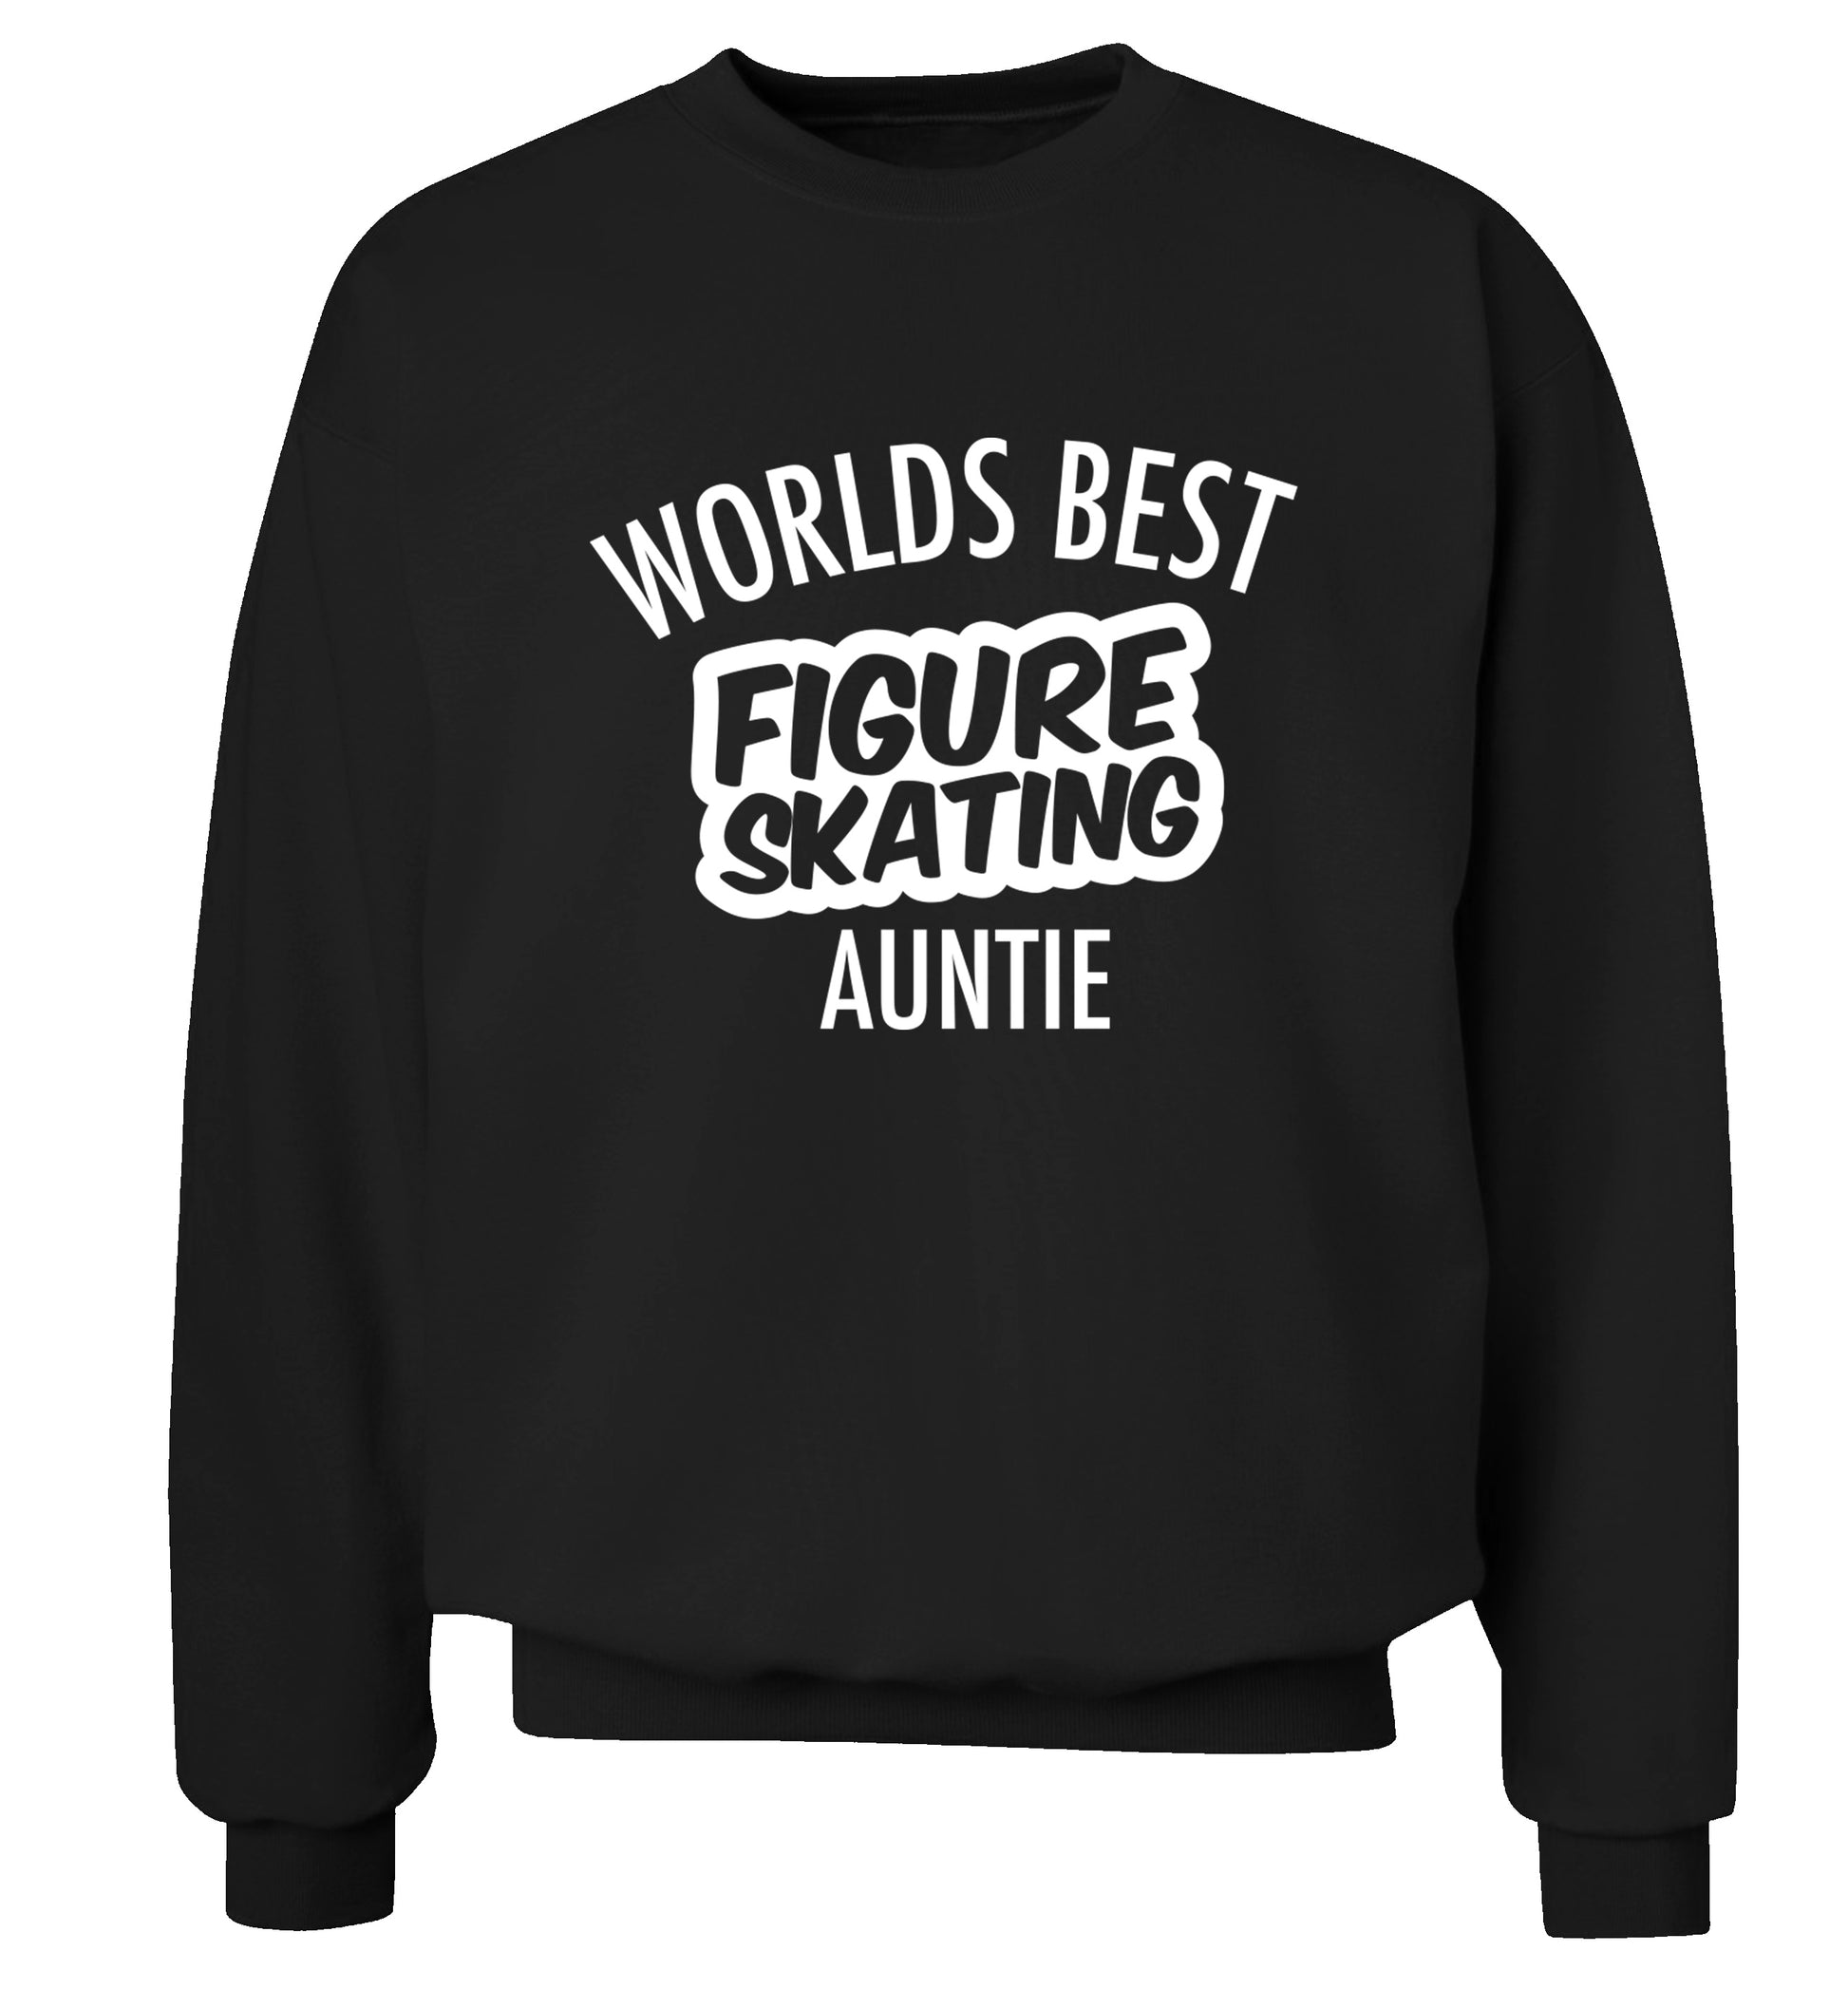 Worlds best figure skating auntie Adult's unisexblack Sweater 2XL